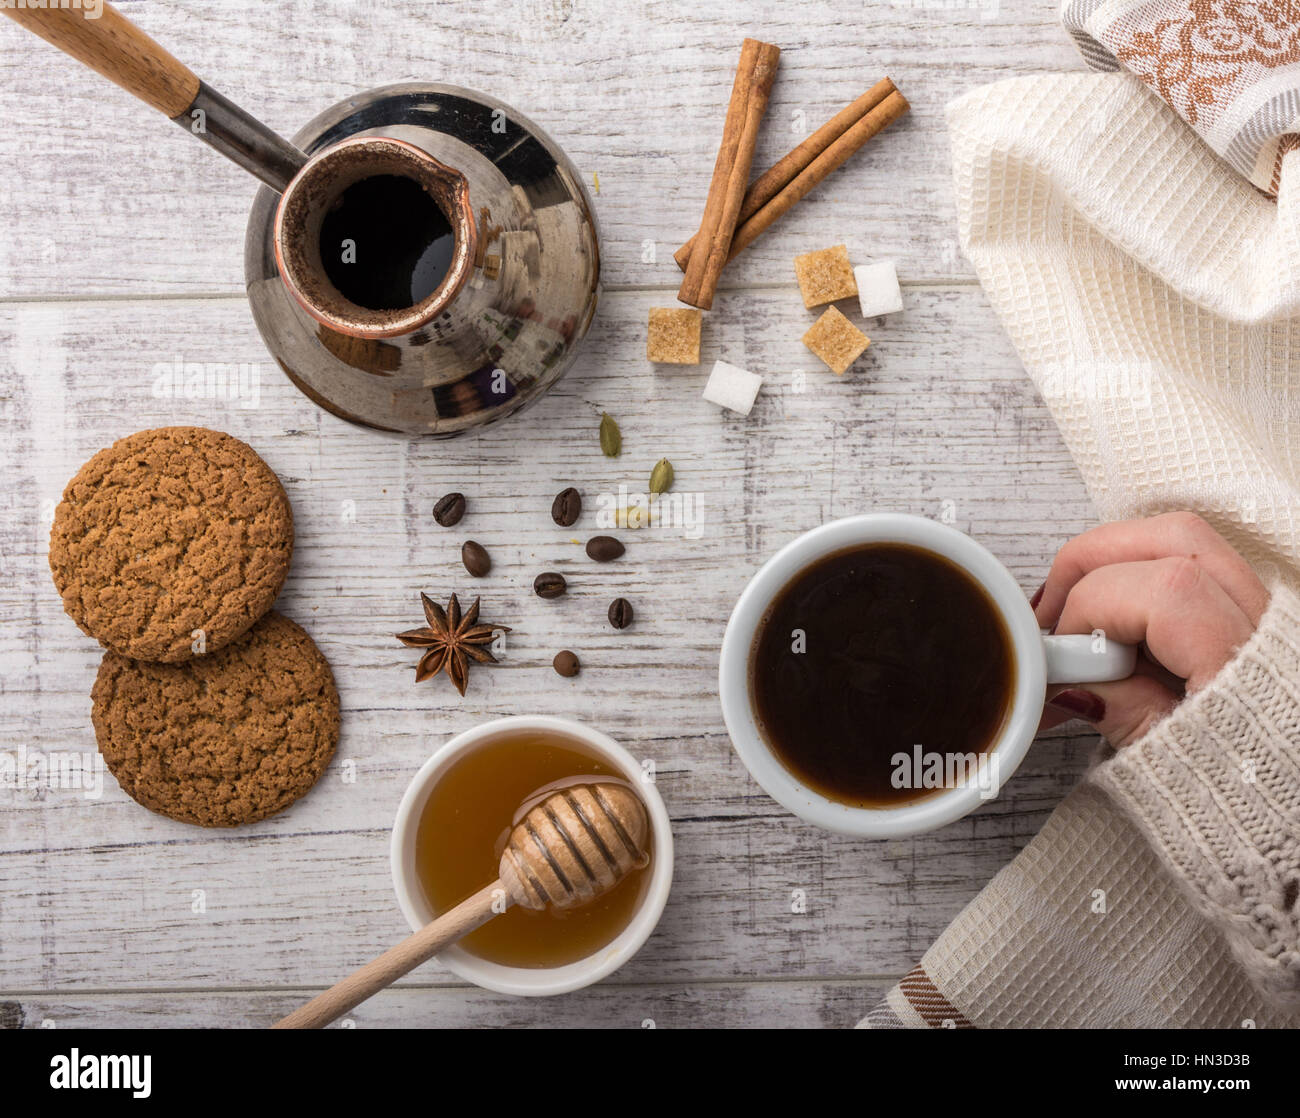 Frau trinkt Kaffee mit Keksen, Zucker und Honig. Kaffeemaschine, Zimt, Sternanis und Kardamom auf einem weißen Holztisch liegen. Stockfoto